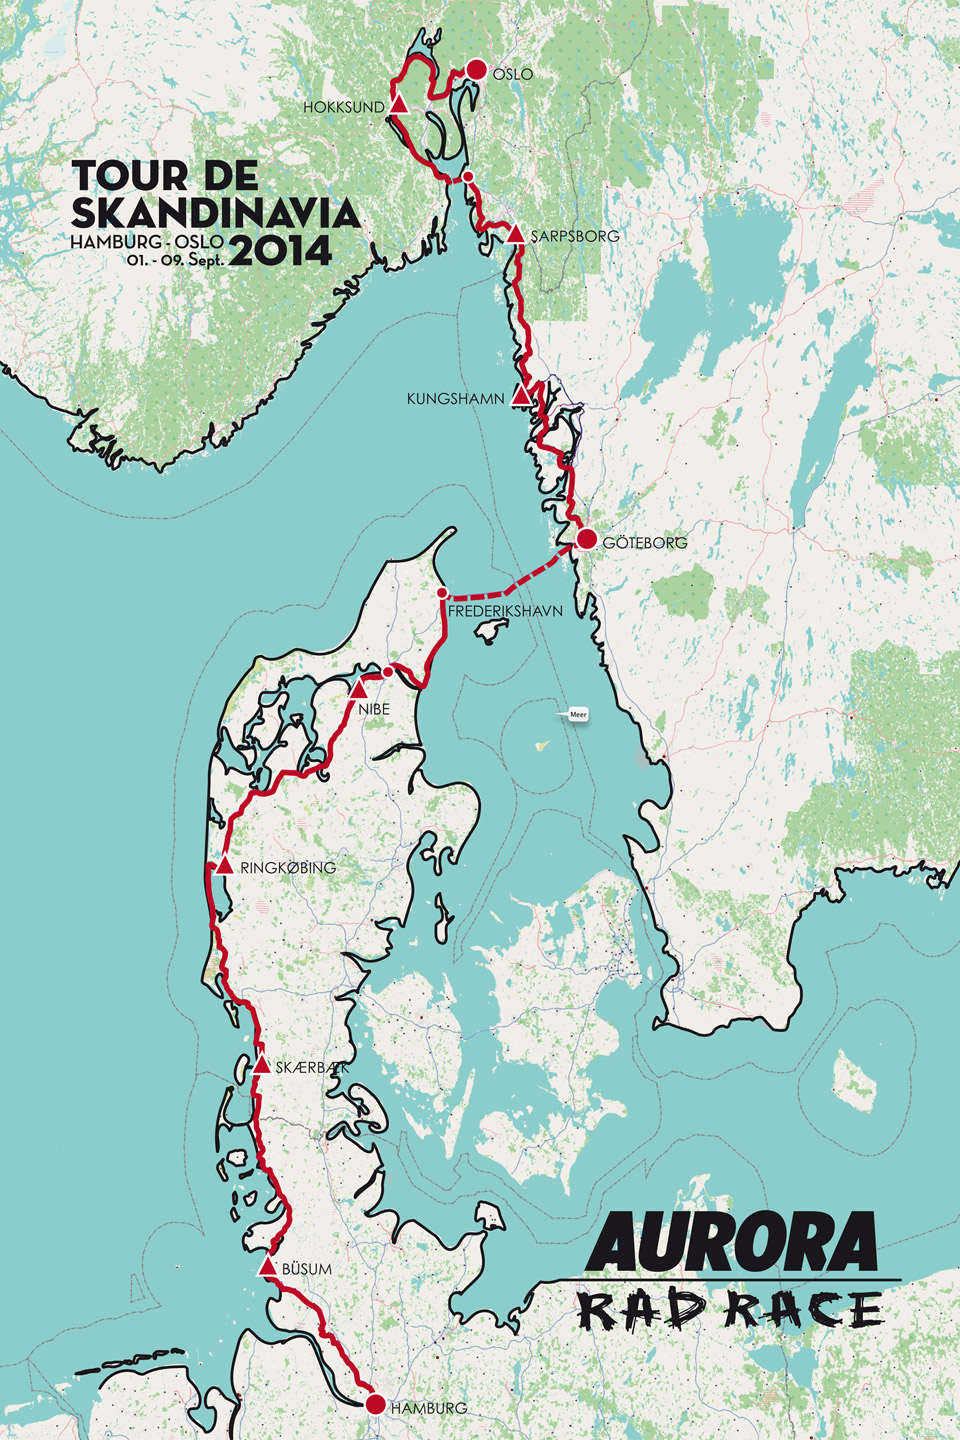 Tour de Skandinavia - Route